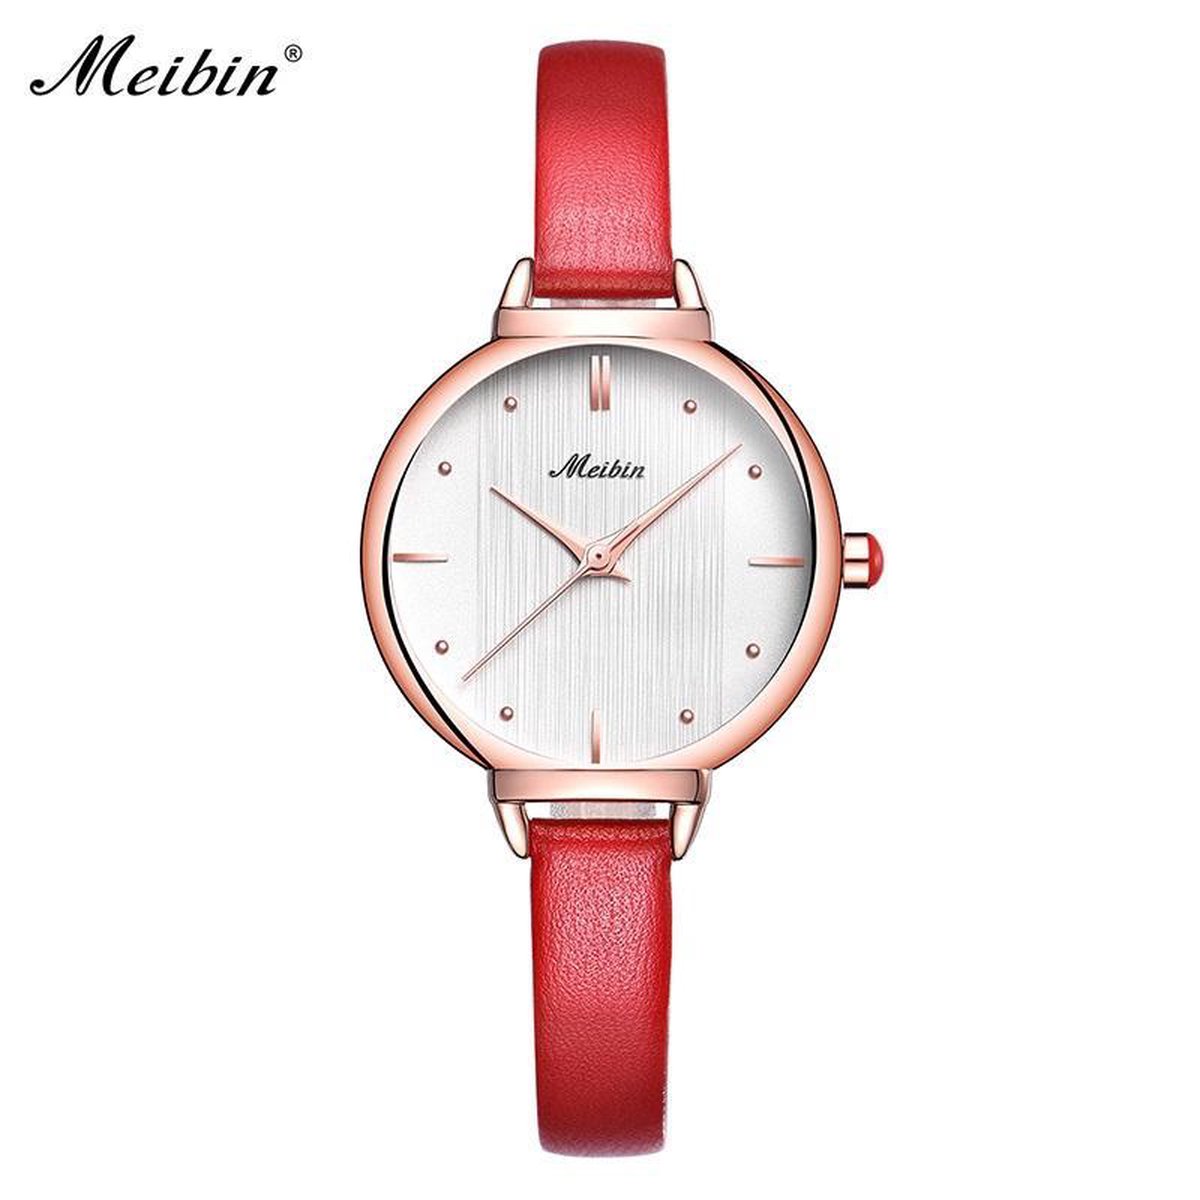 Longbo - Meibin - Dames Horloge - Rood/Rosé/Wit - 31mm